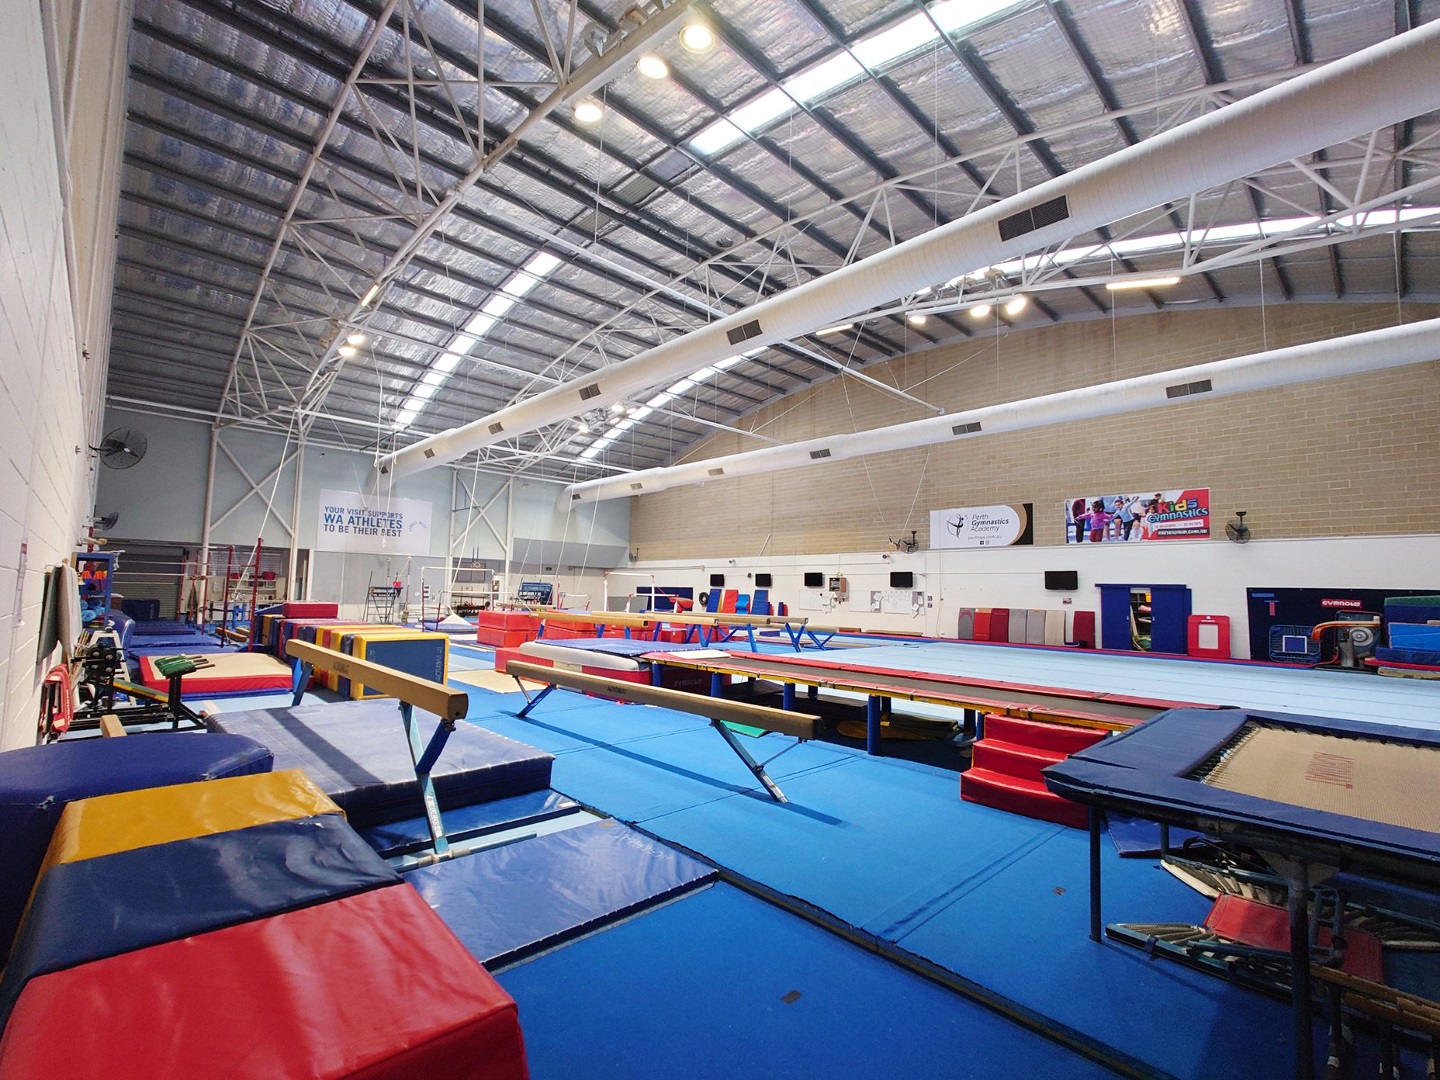 Gymnastics Training Centre